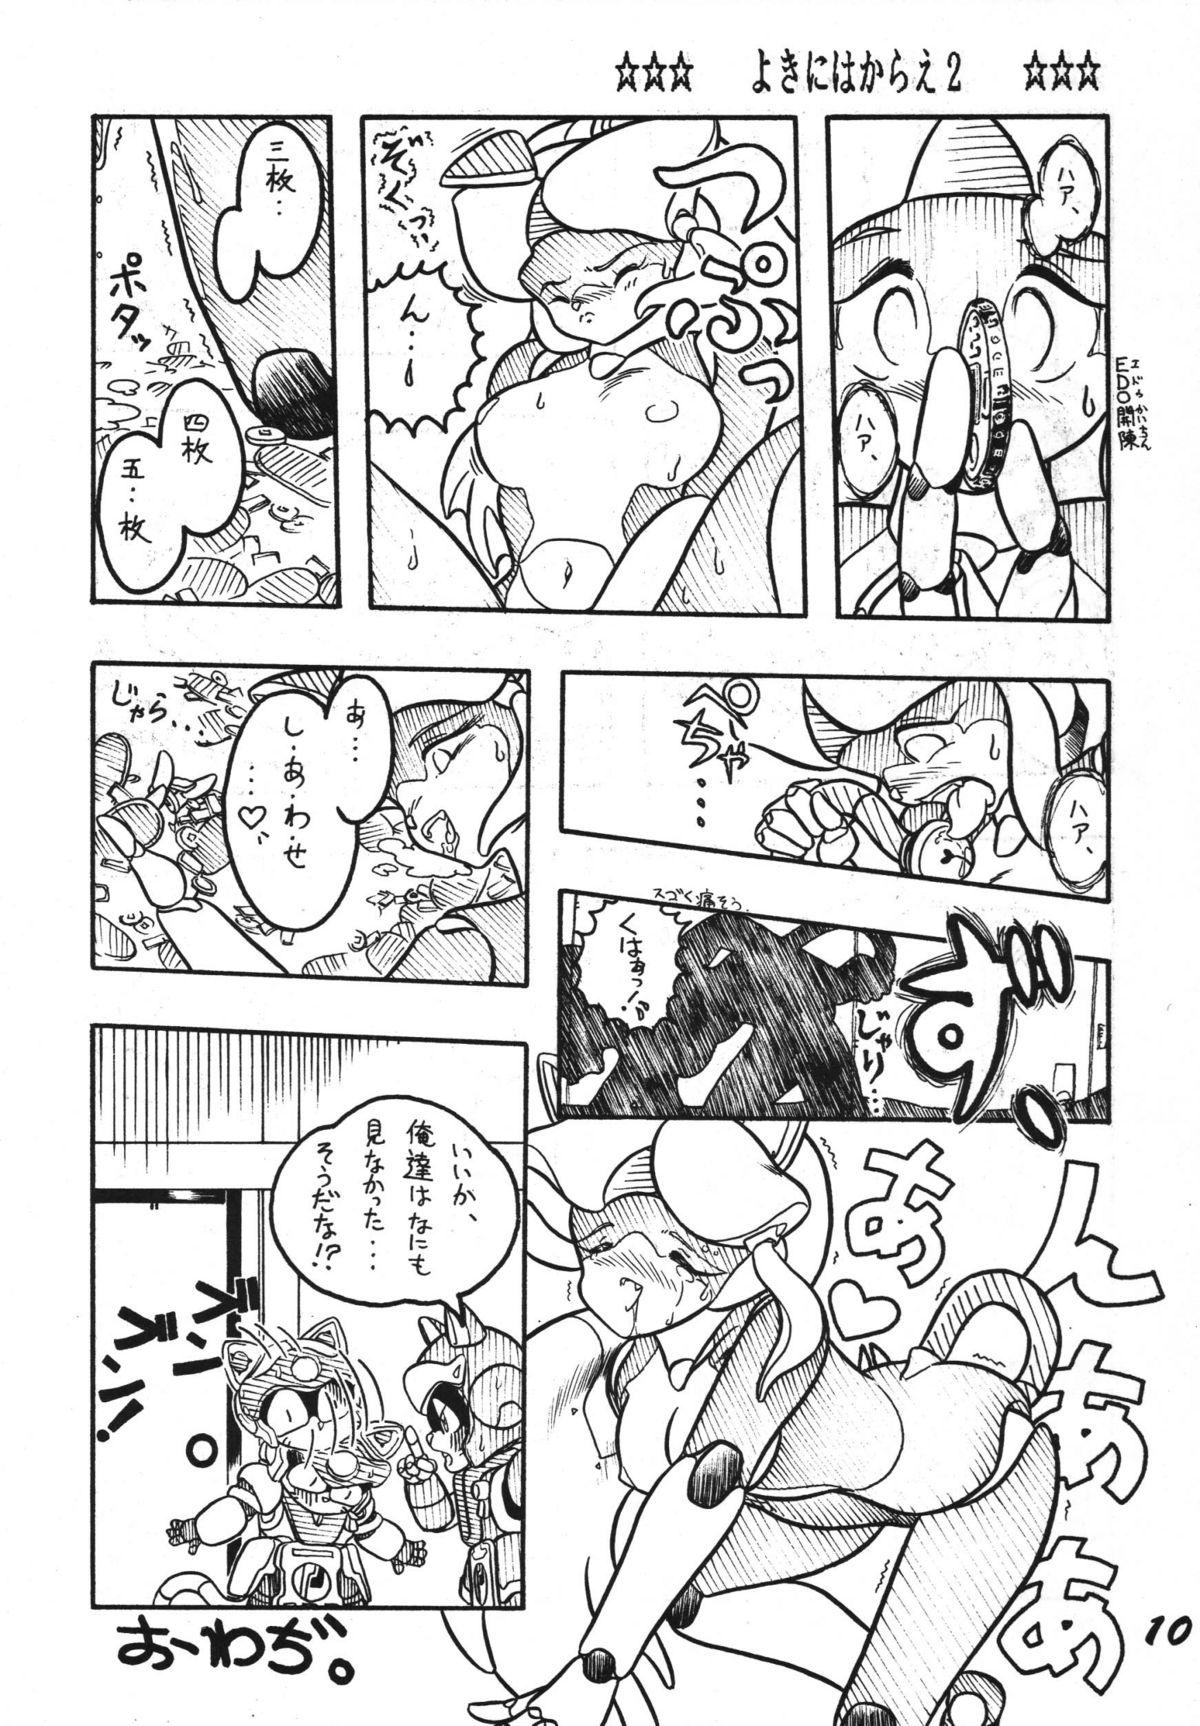 Tugging Yokini Hakarae - Ni no Maki - Samurai pizza cats Teenporno - Page 10